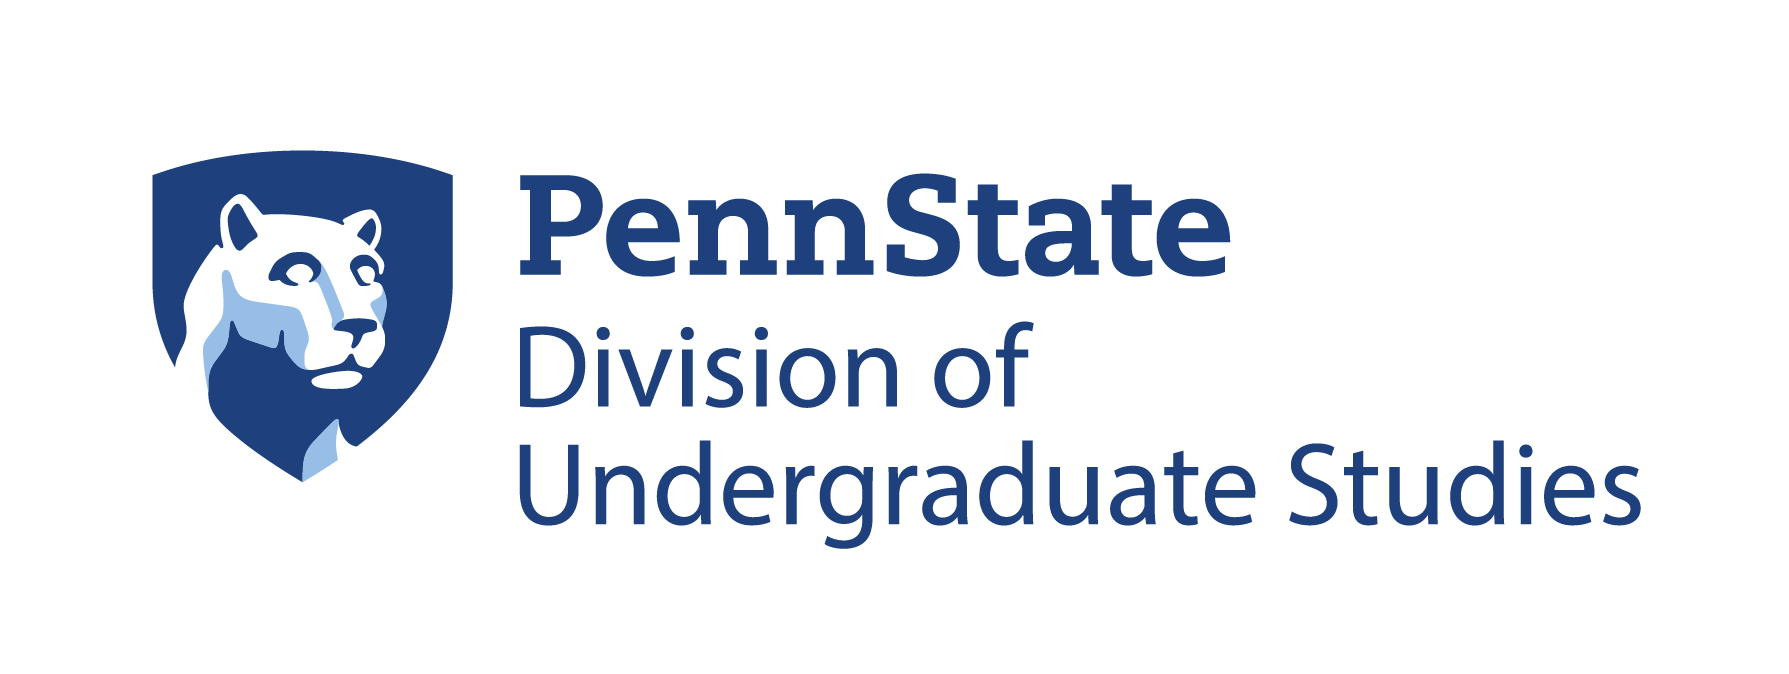 Penn State Division of Undergraduate Studies